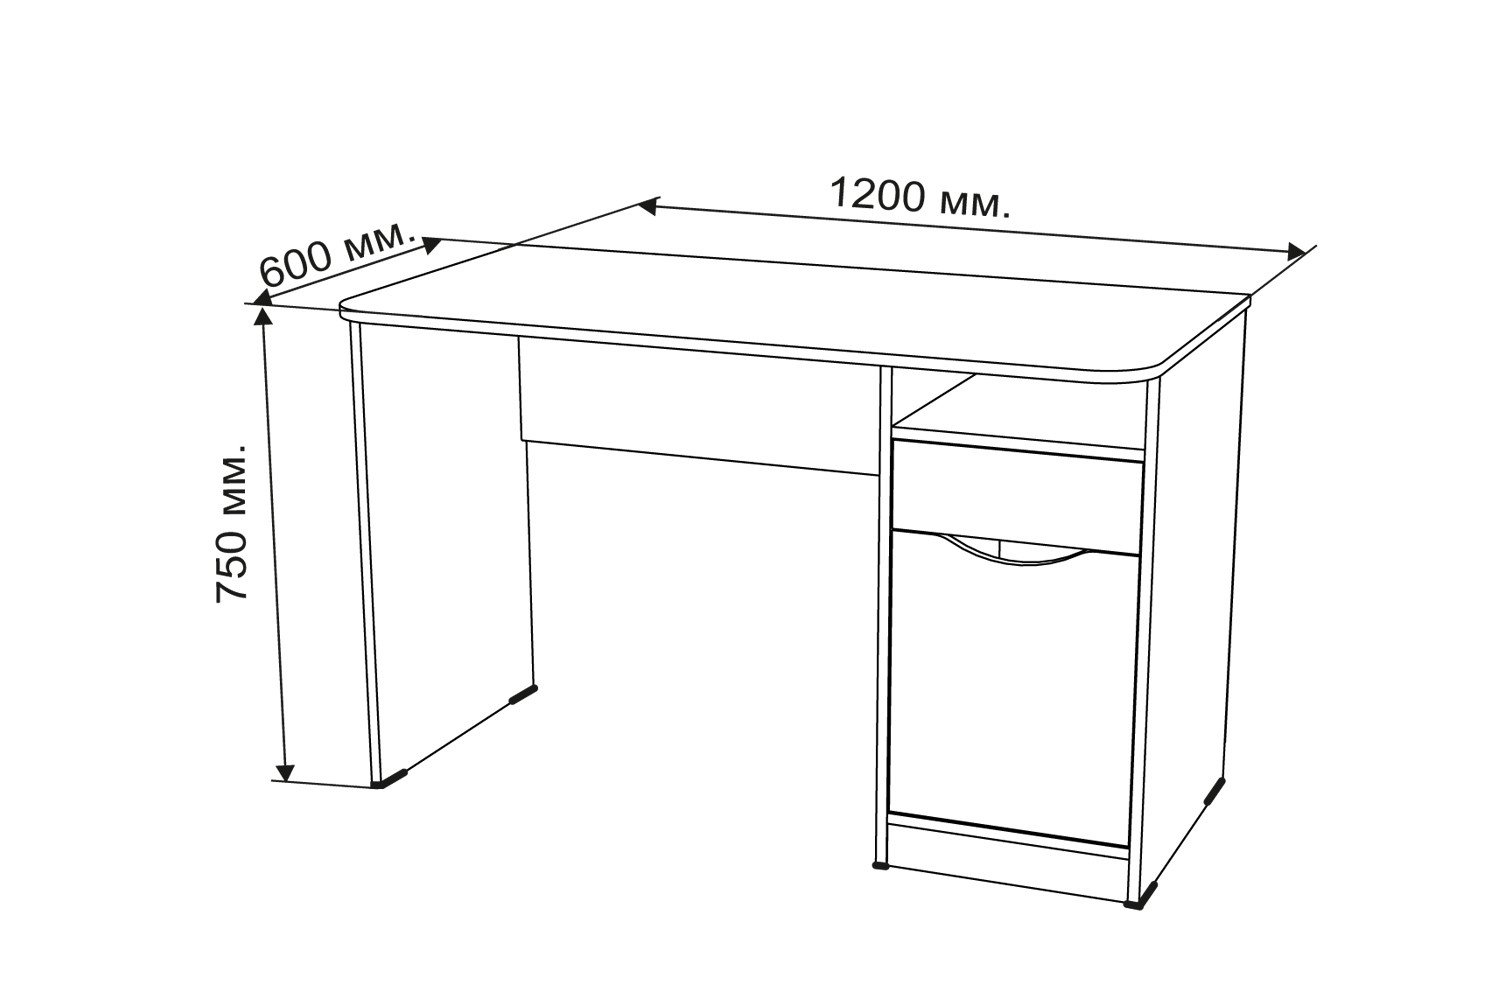 размеры столешниц письменного стола